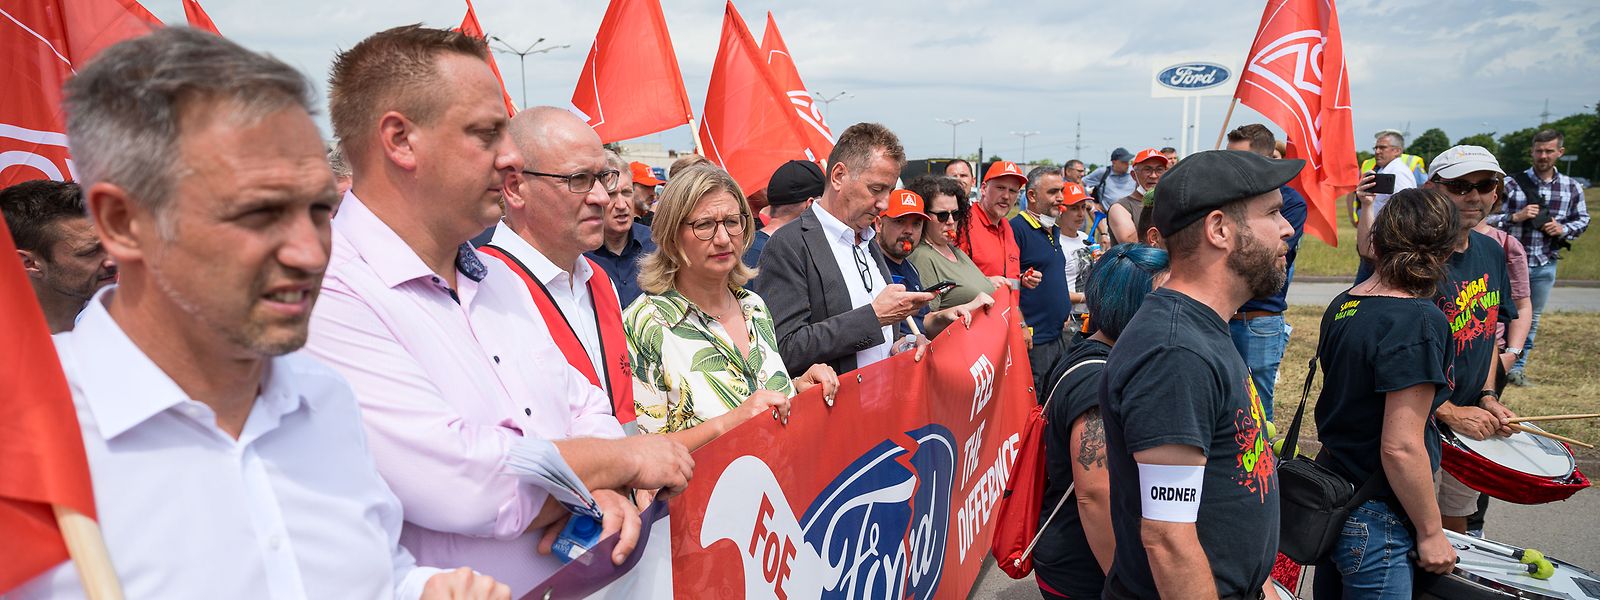 La ministre-présidente du Land de Sarre, Anke Rehlinger (SPD), parmi les manifestants de Ford Sarrelouis mercredi après-midi.